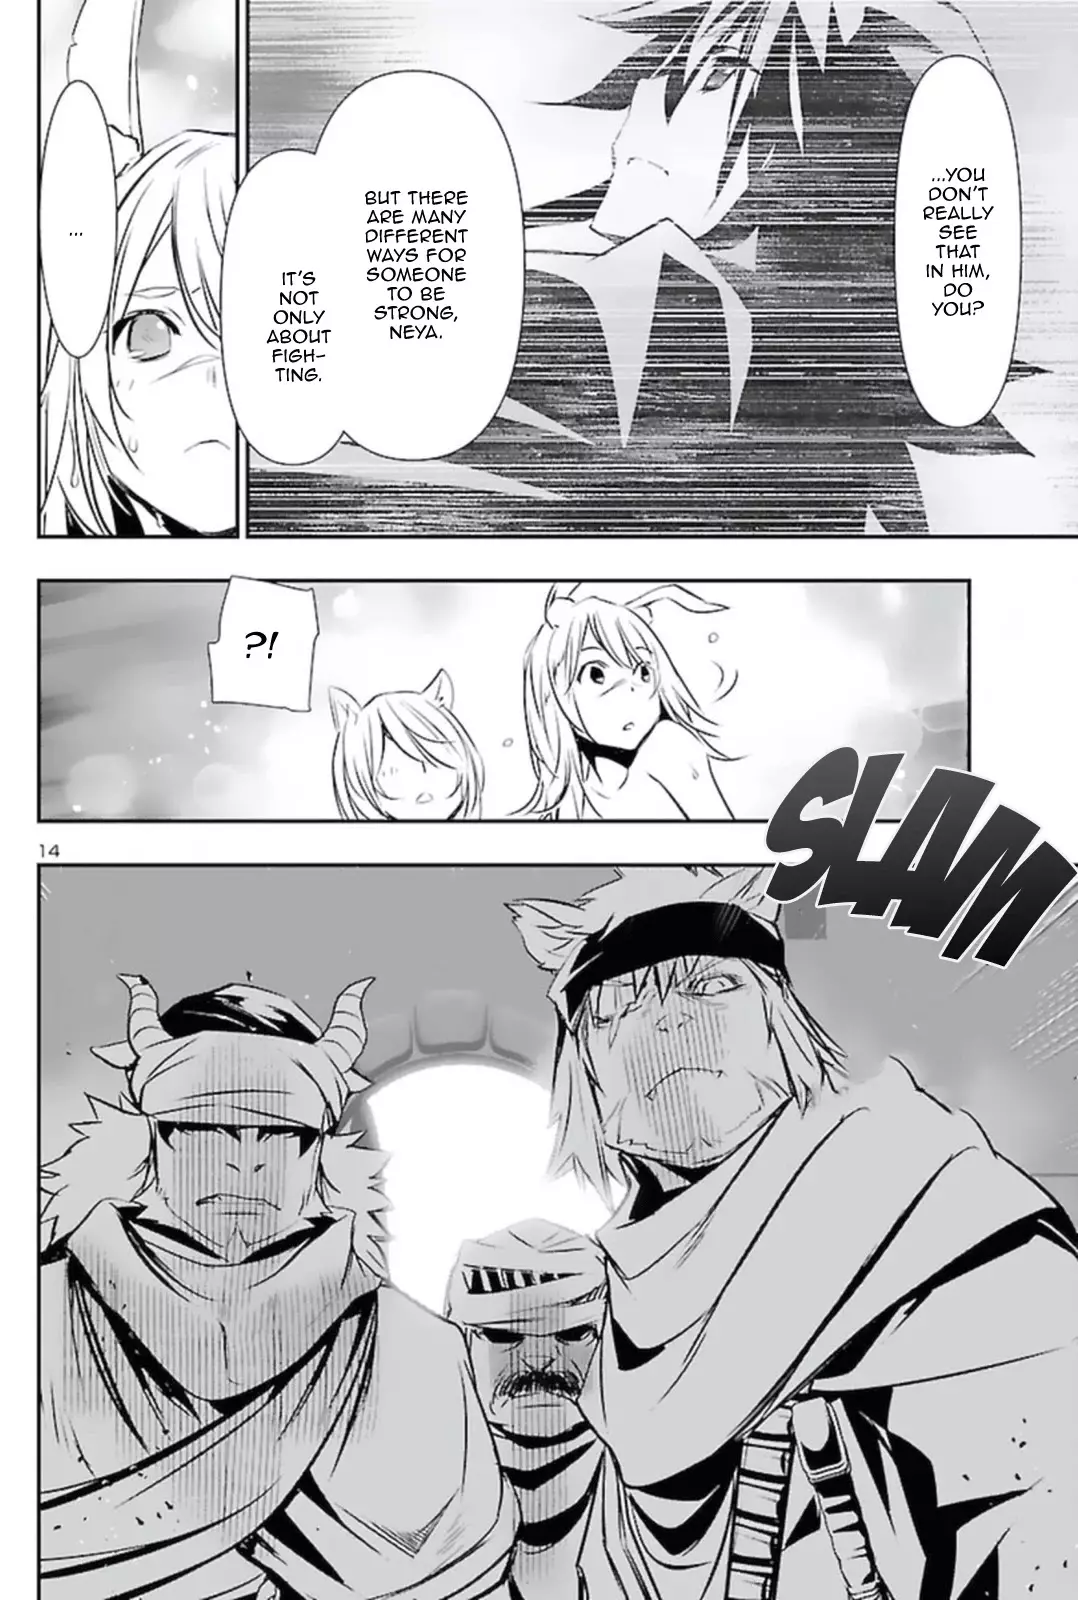 Shinju no Nectar - 57 page 14